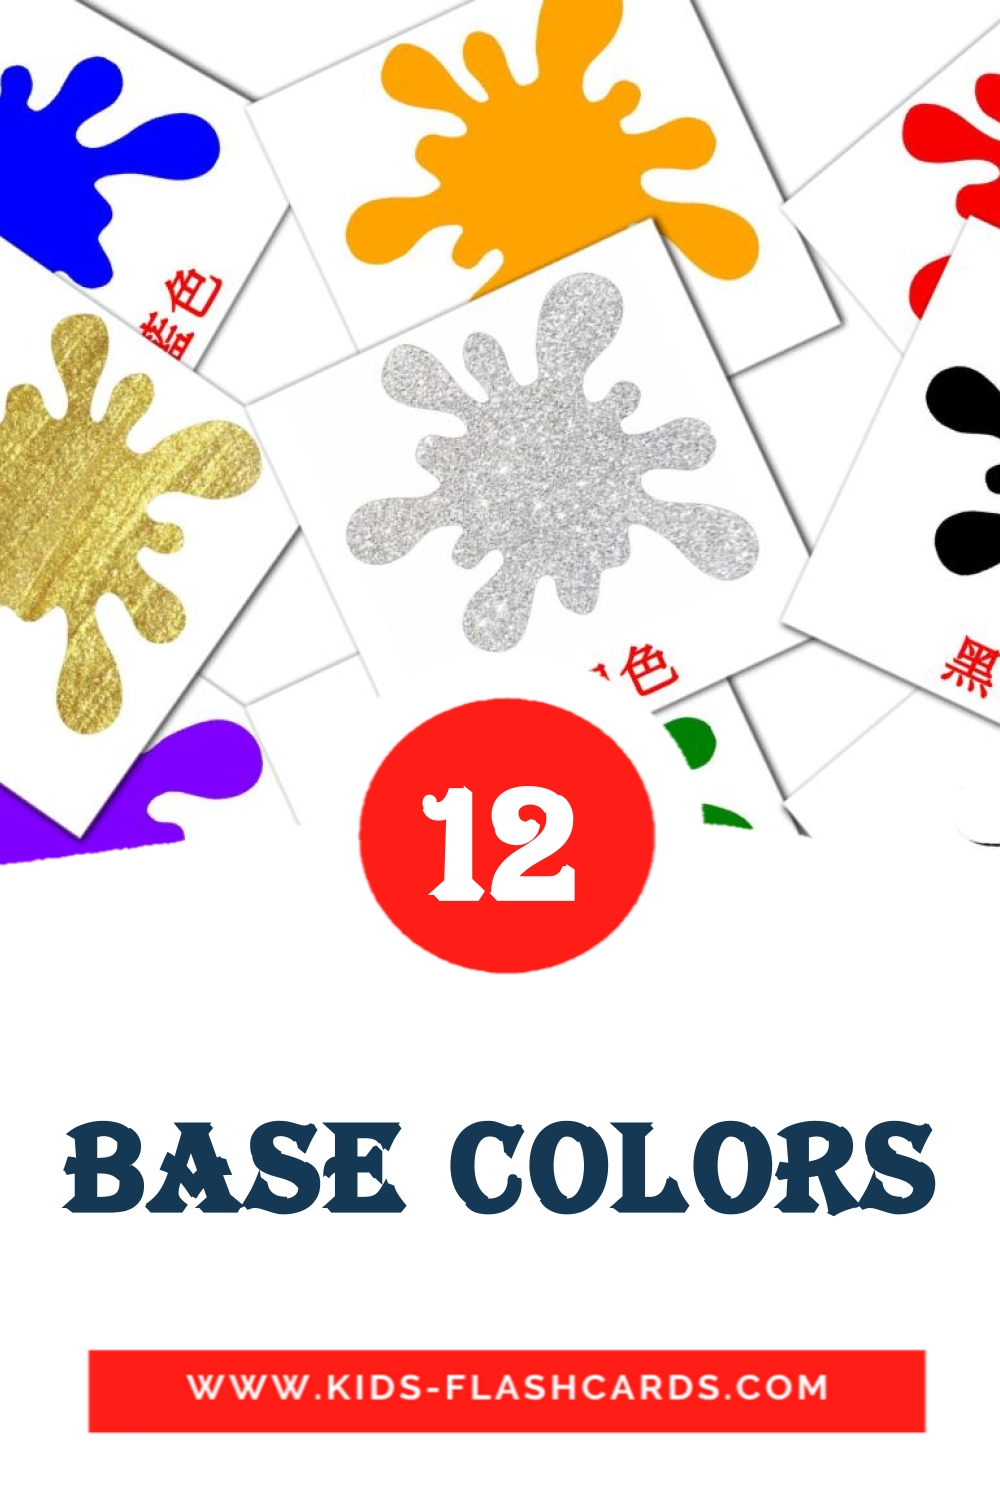 12 cartes illustrées de base colors pour la maternelle en chinois(traditionnel)